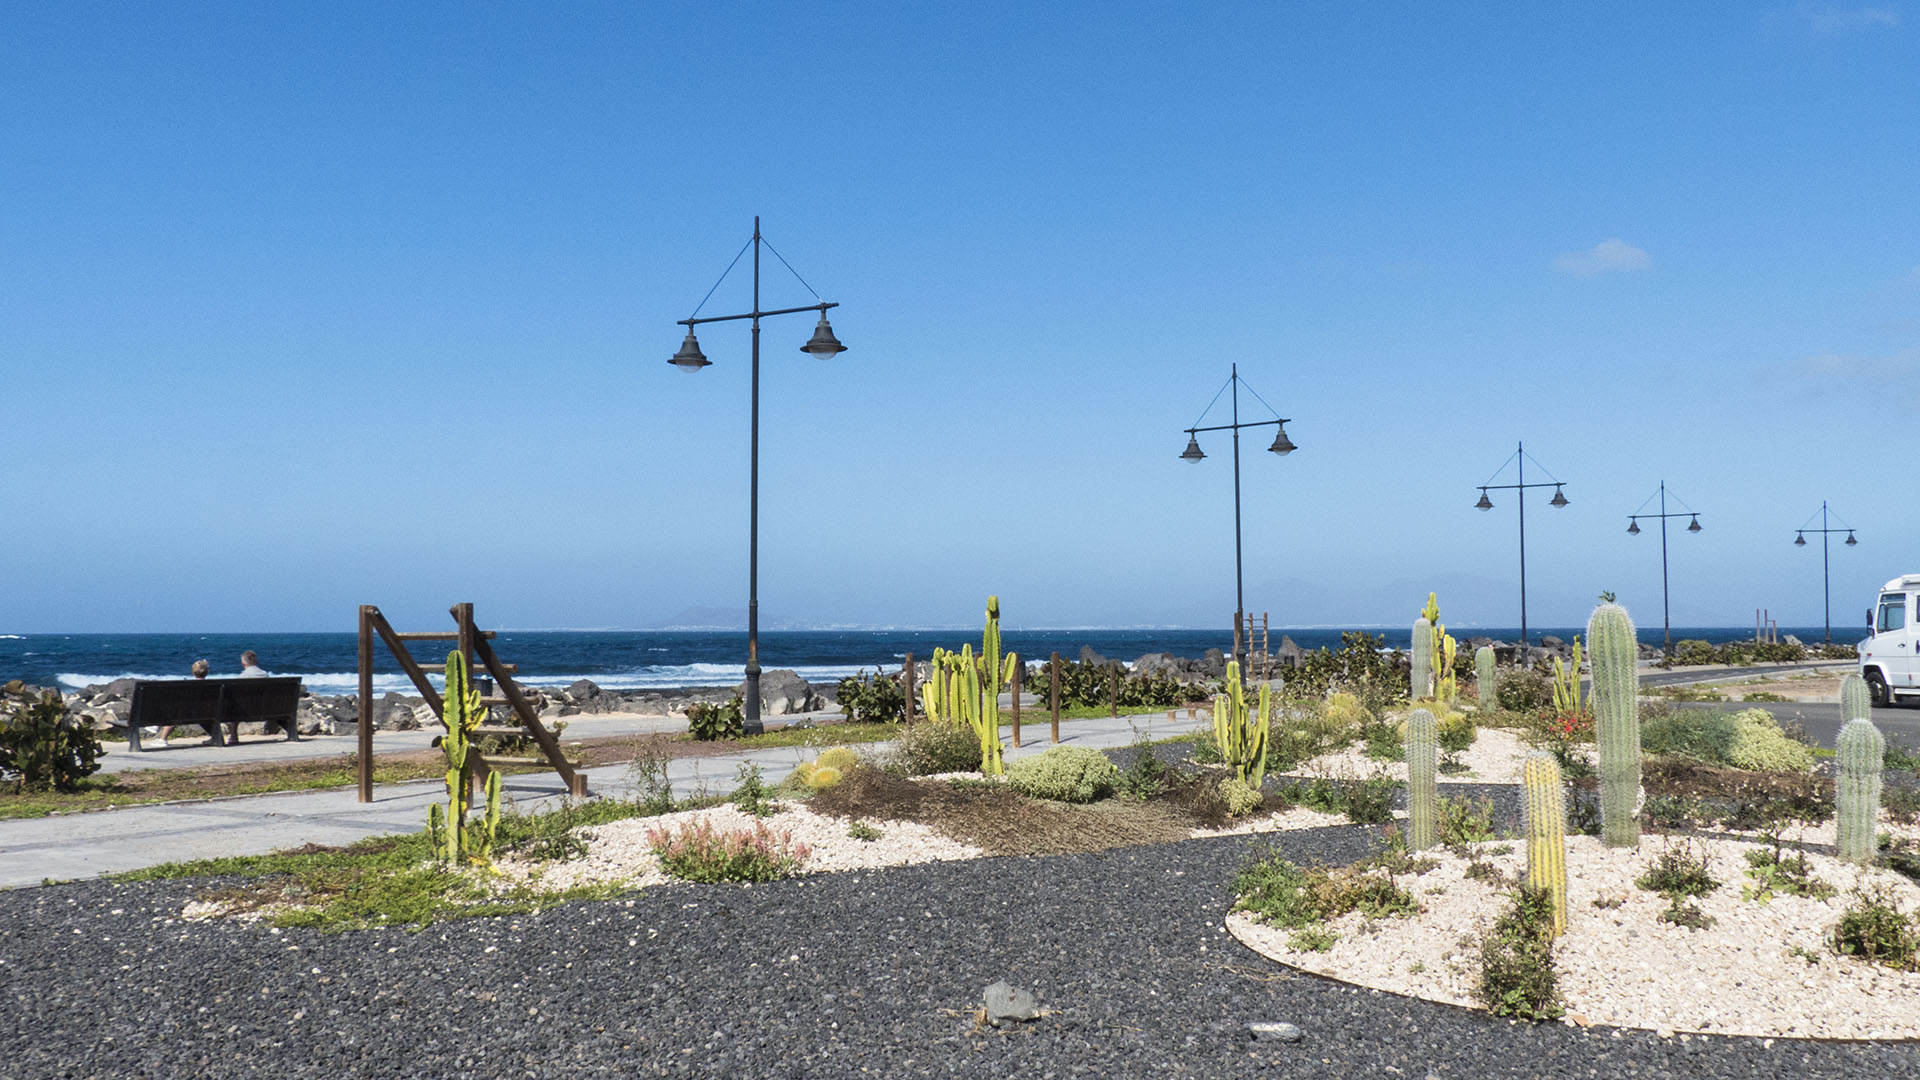 Der Ort Corralejo Fuertventura: Paseo